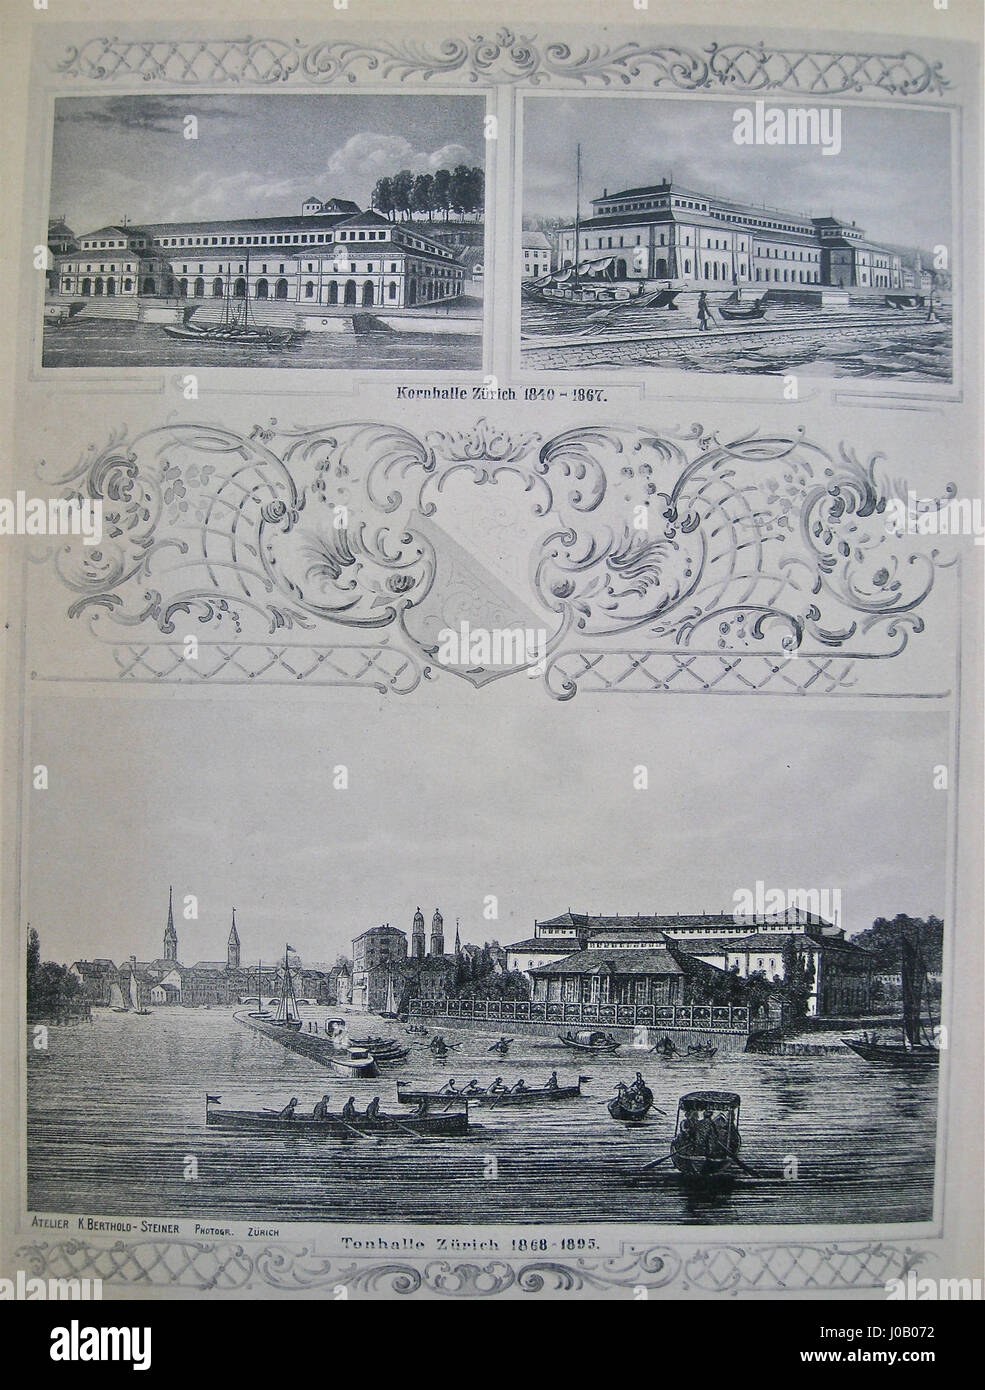 Kornhalle Zürich, 1840-1867 Konzertsaal auf dem heutigen Sechseläuten-Platz (oben); die dortige Alte Tonhalle , 1868-1895 (unten) Foto Stock